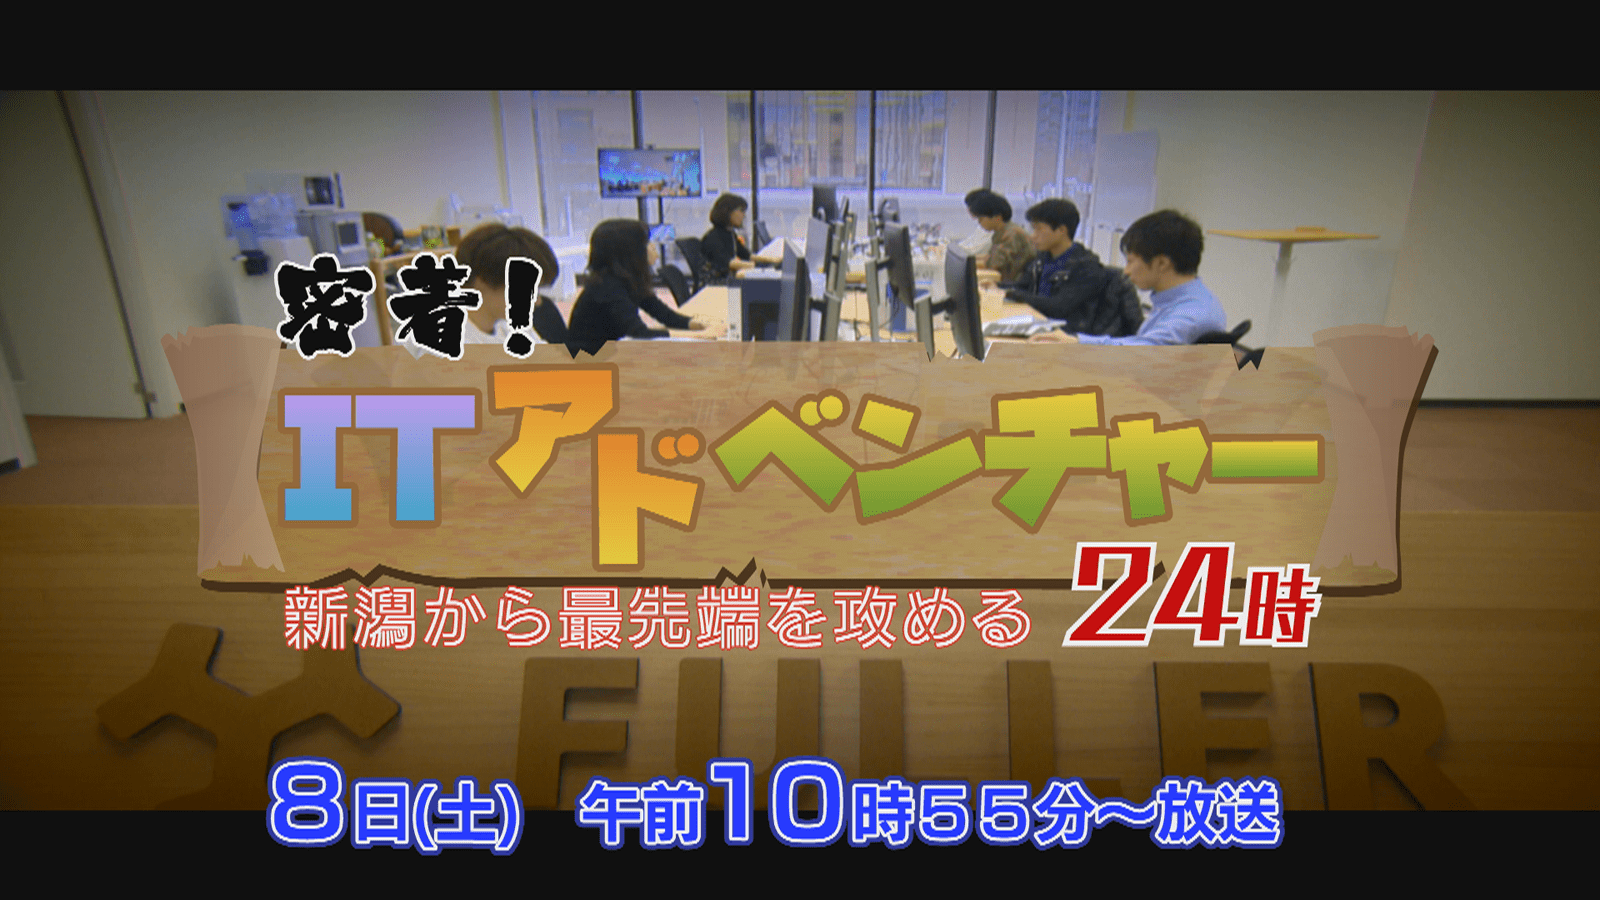 テレビ新潟にて、フラー特集番組が放映